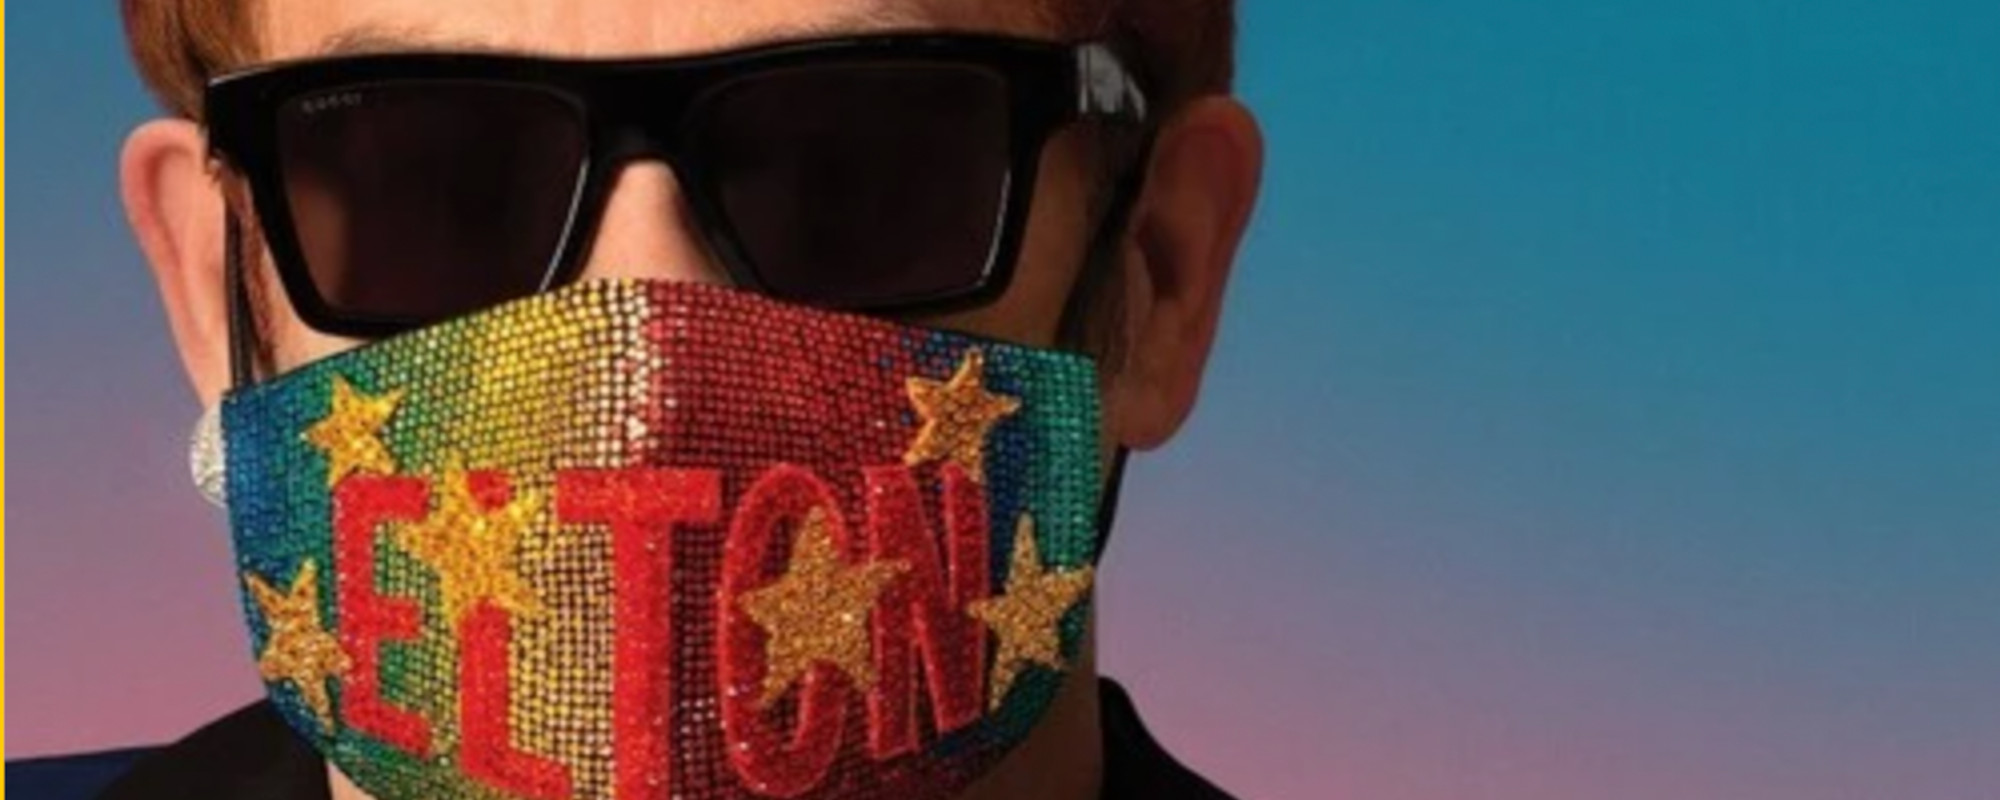 Elton John Releases New LP, ‘The Lockdown Sessions’